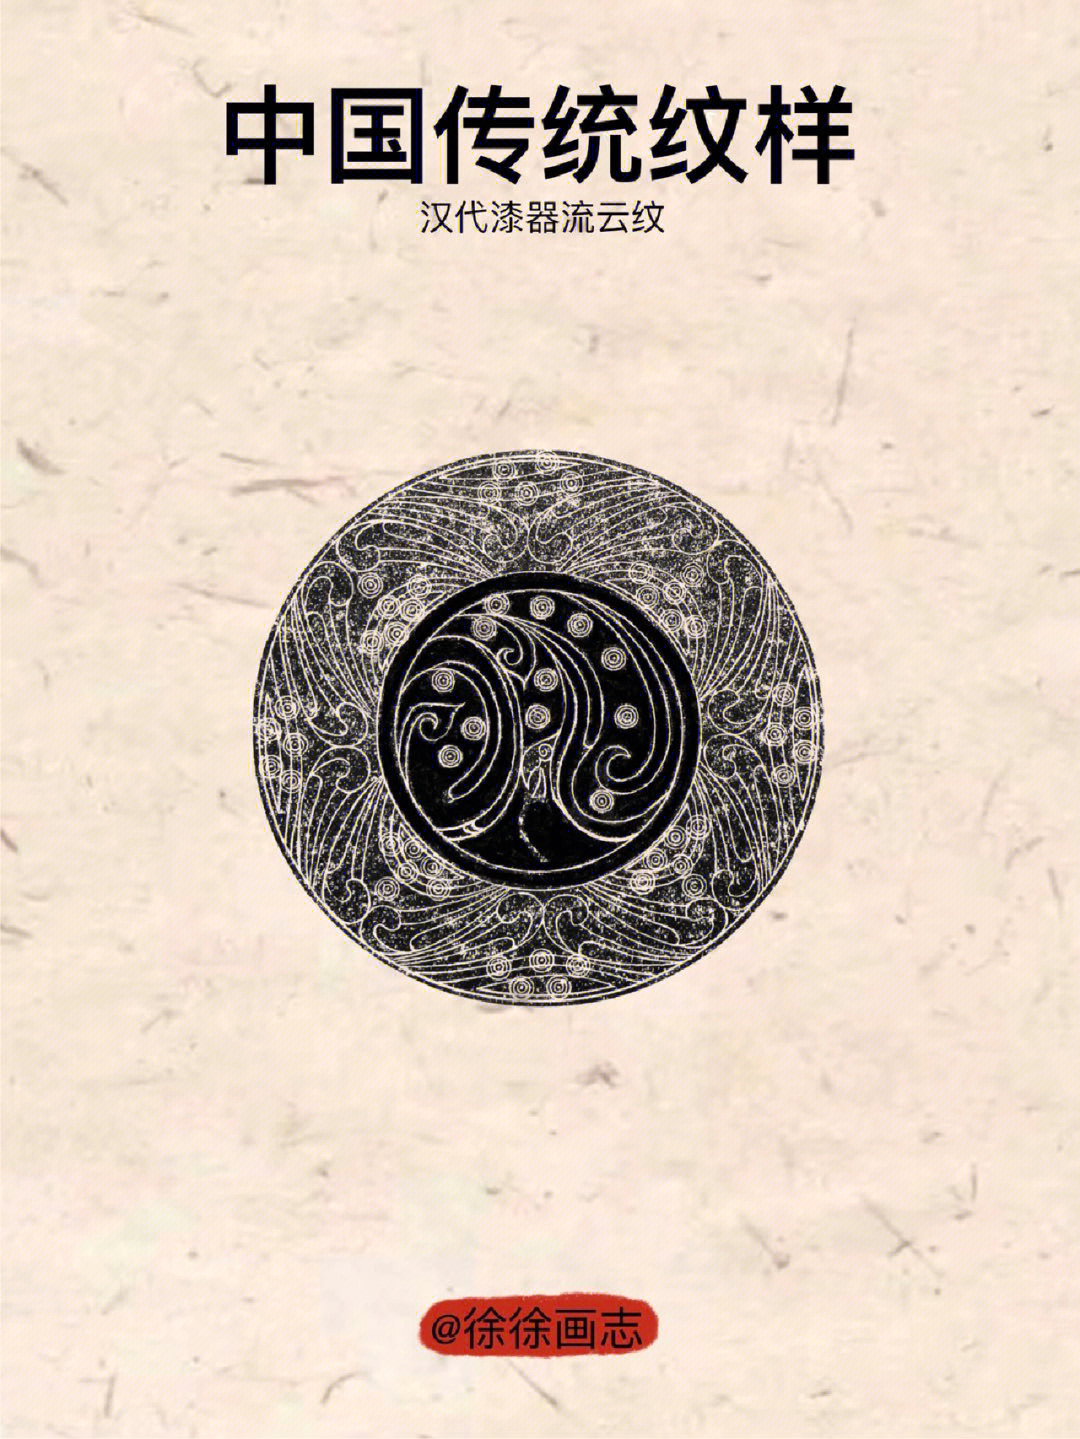 中国传统纹样汉代漆器流云纹